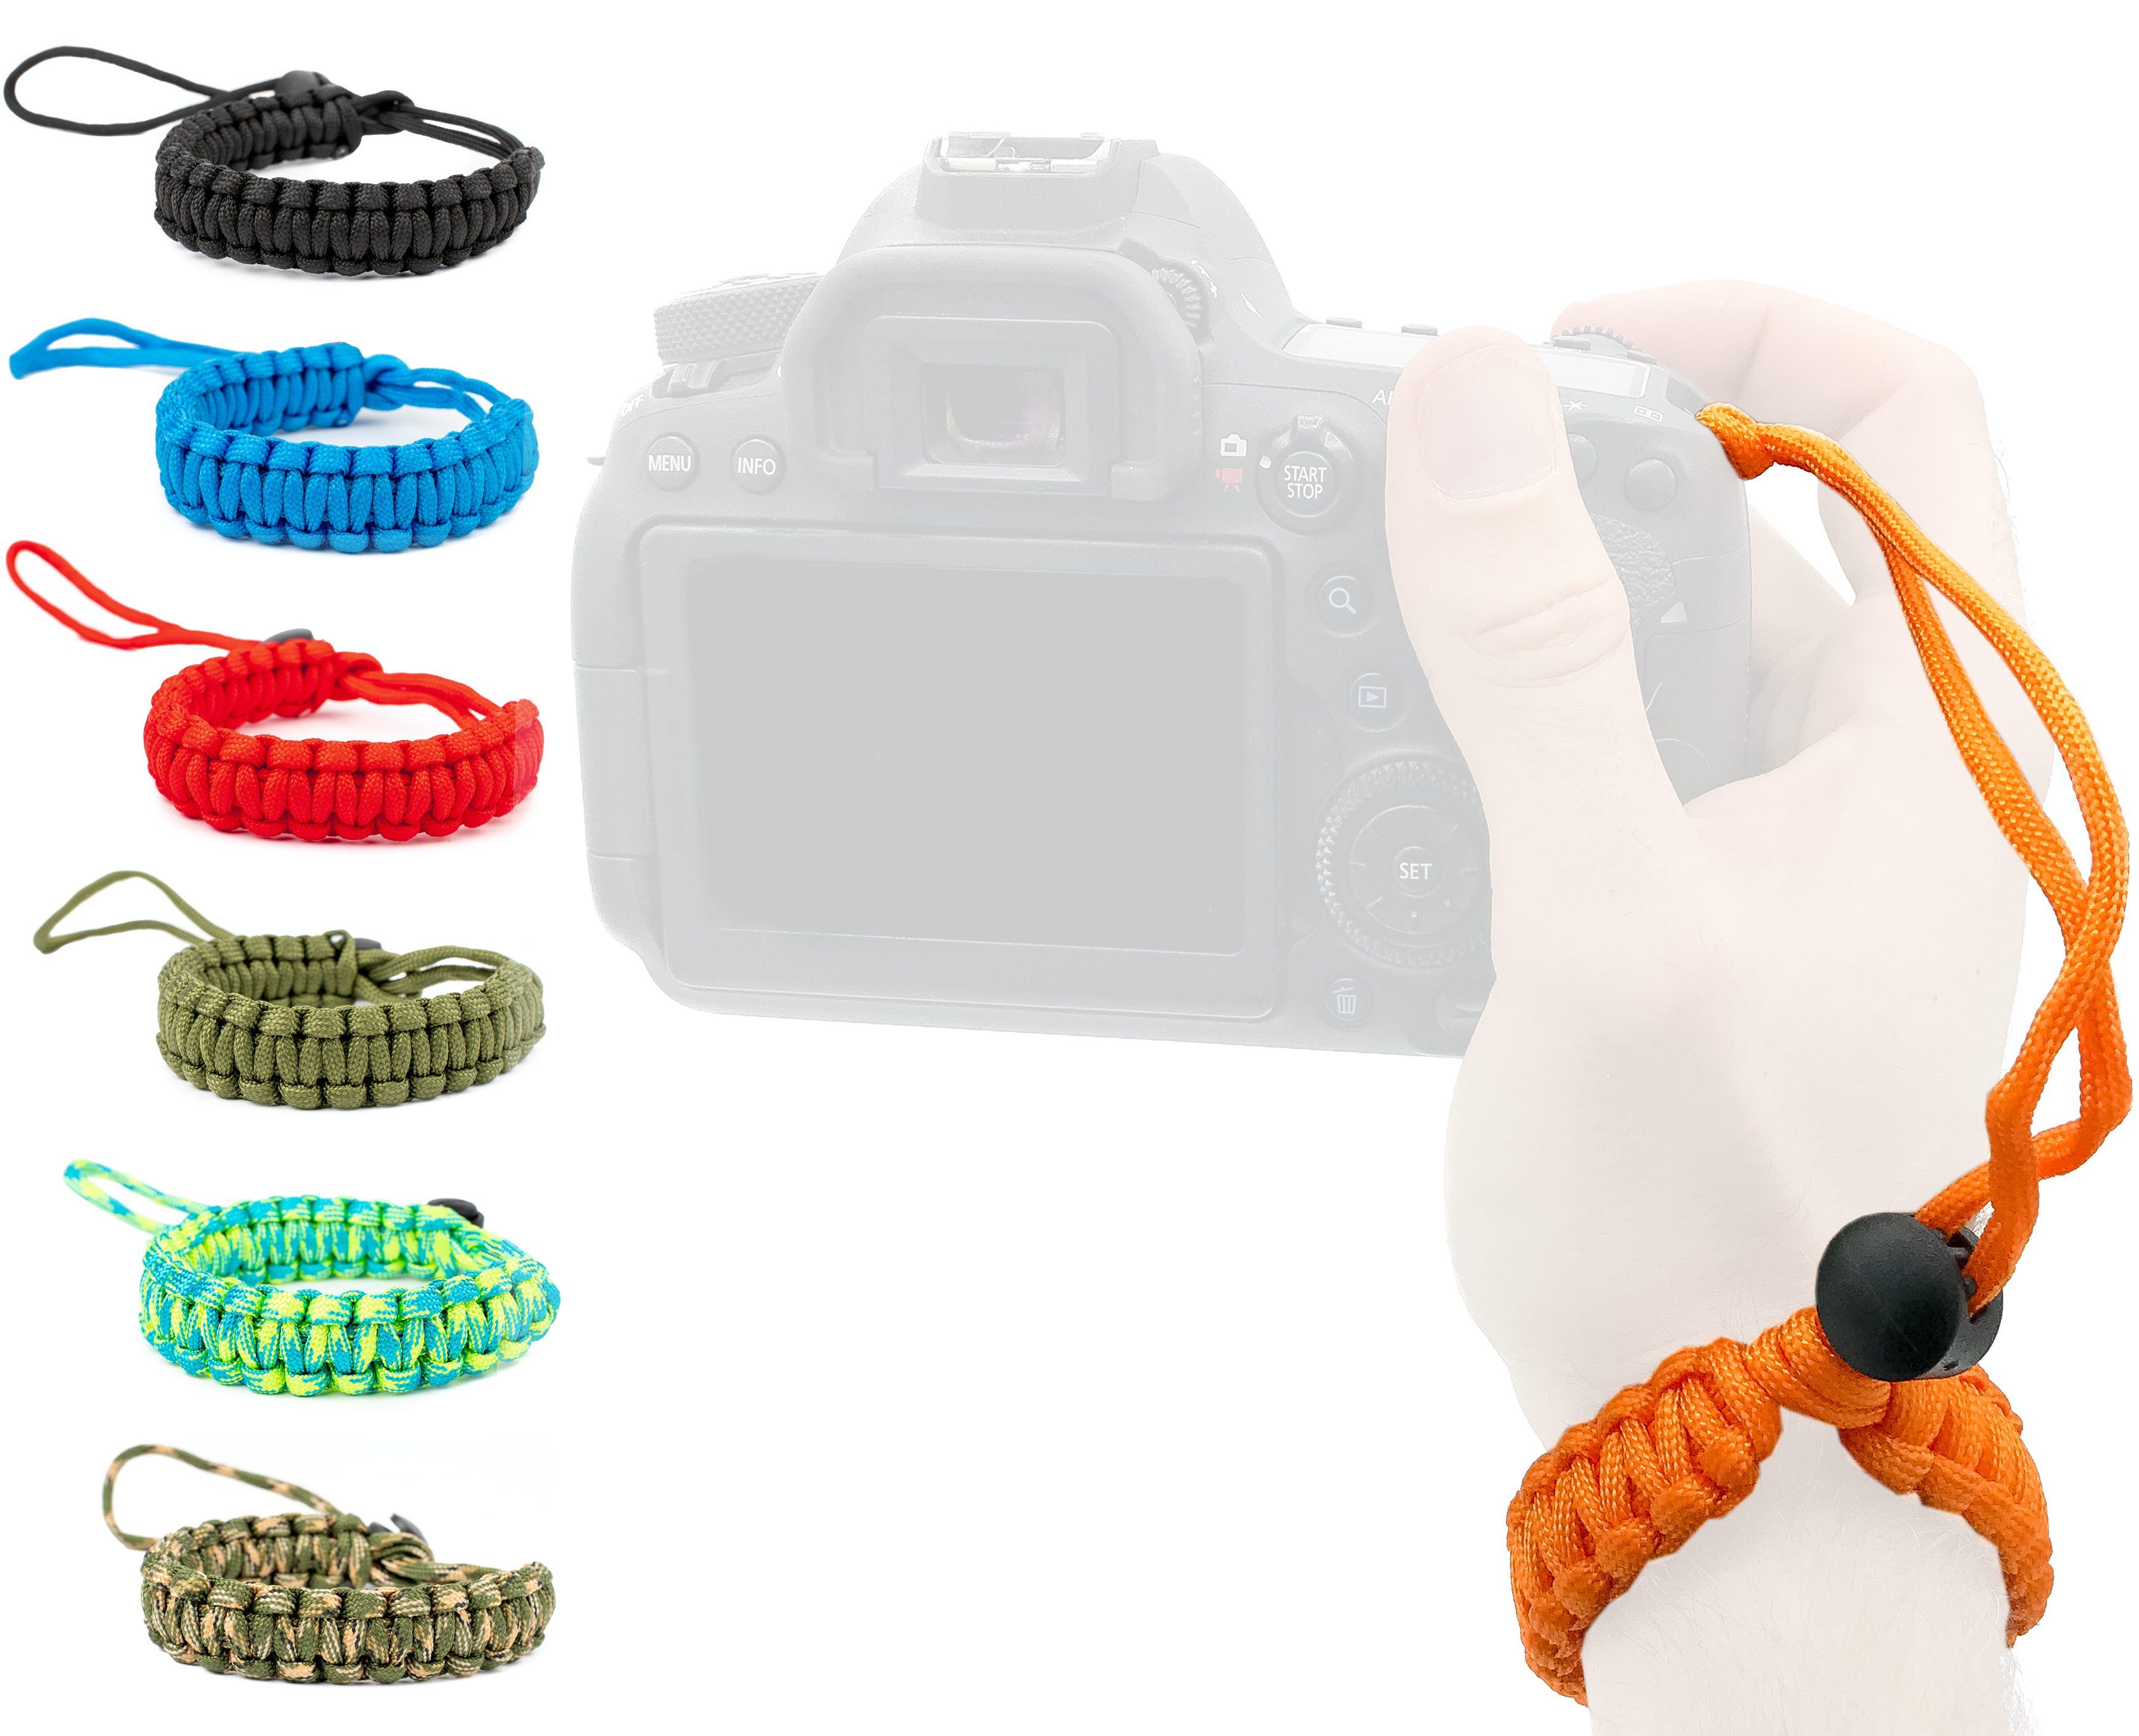 Lens-Aid Kamerazubehör-Set Handschlaufe für Kamera: Paracord Kordel Wrist-Band Kameragurt zum Tragen am Handgelenk DSLR Tragegurt. Orange